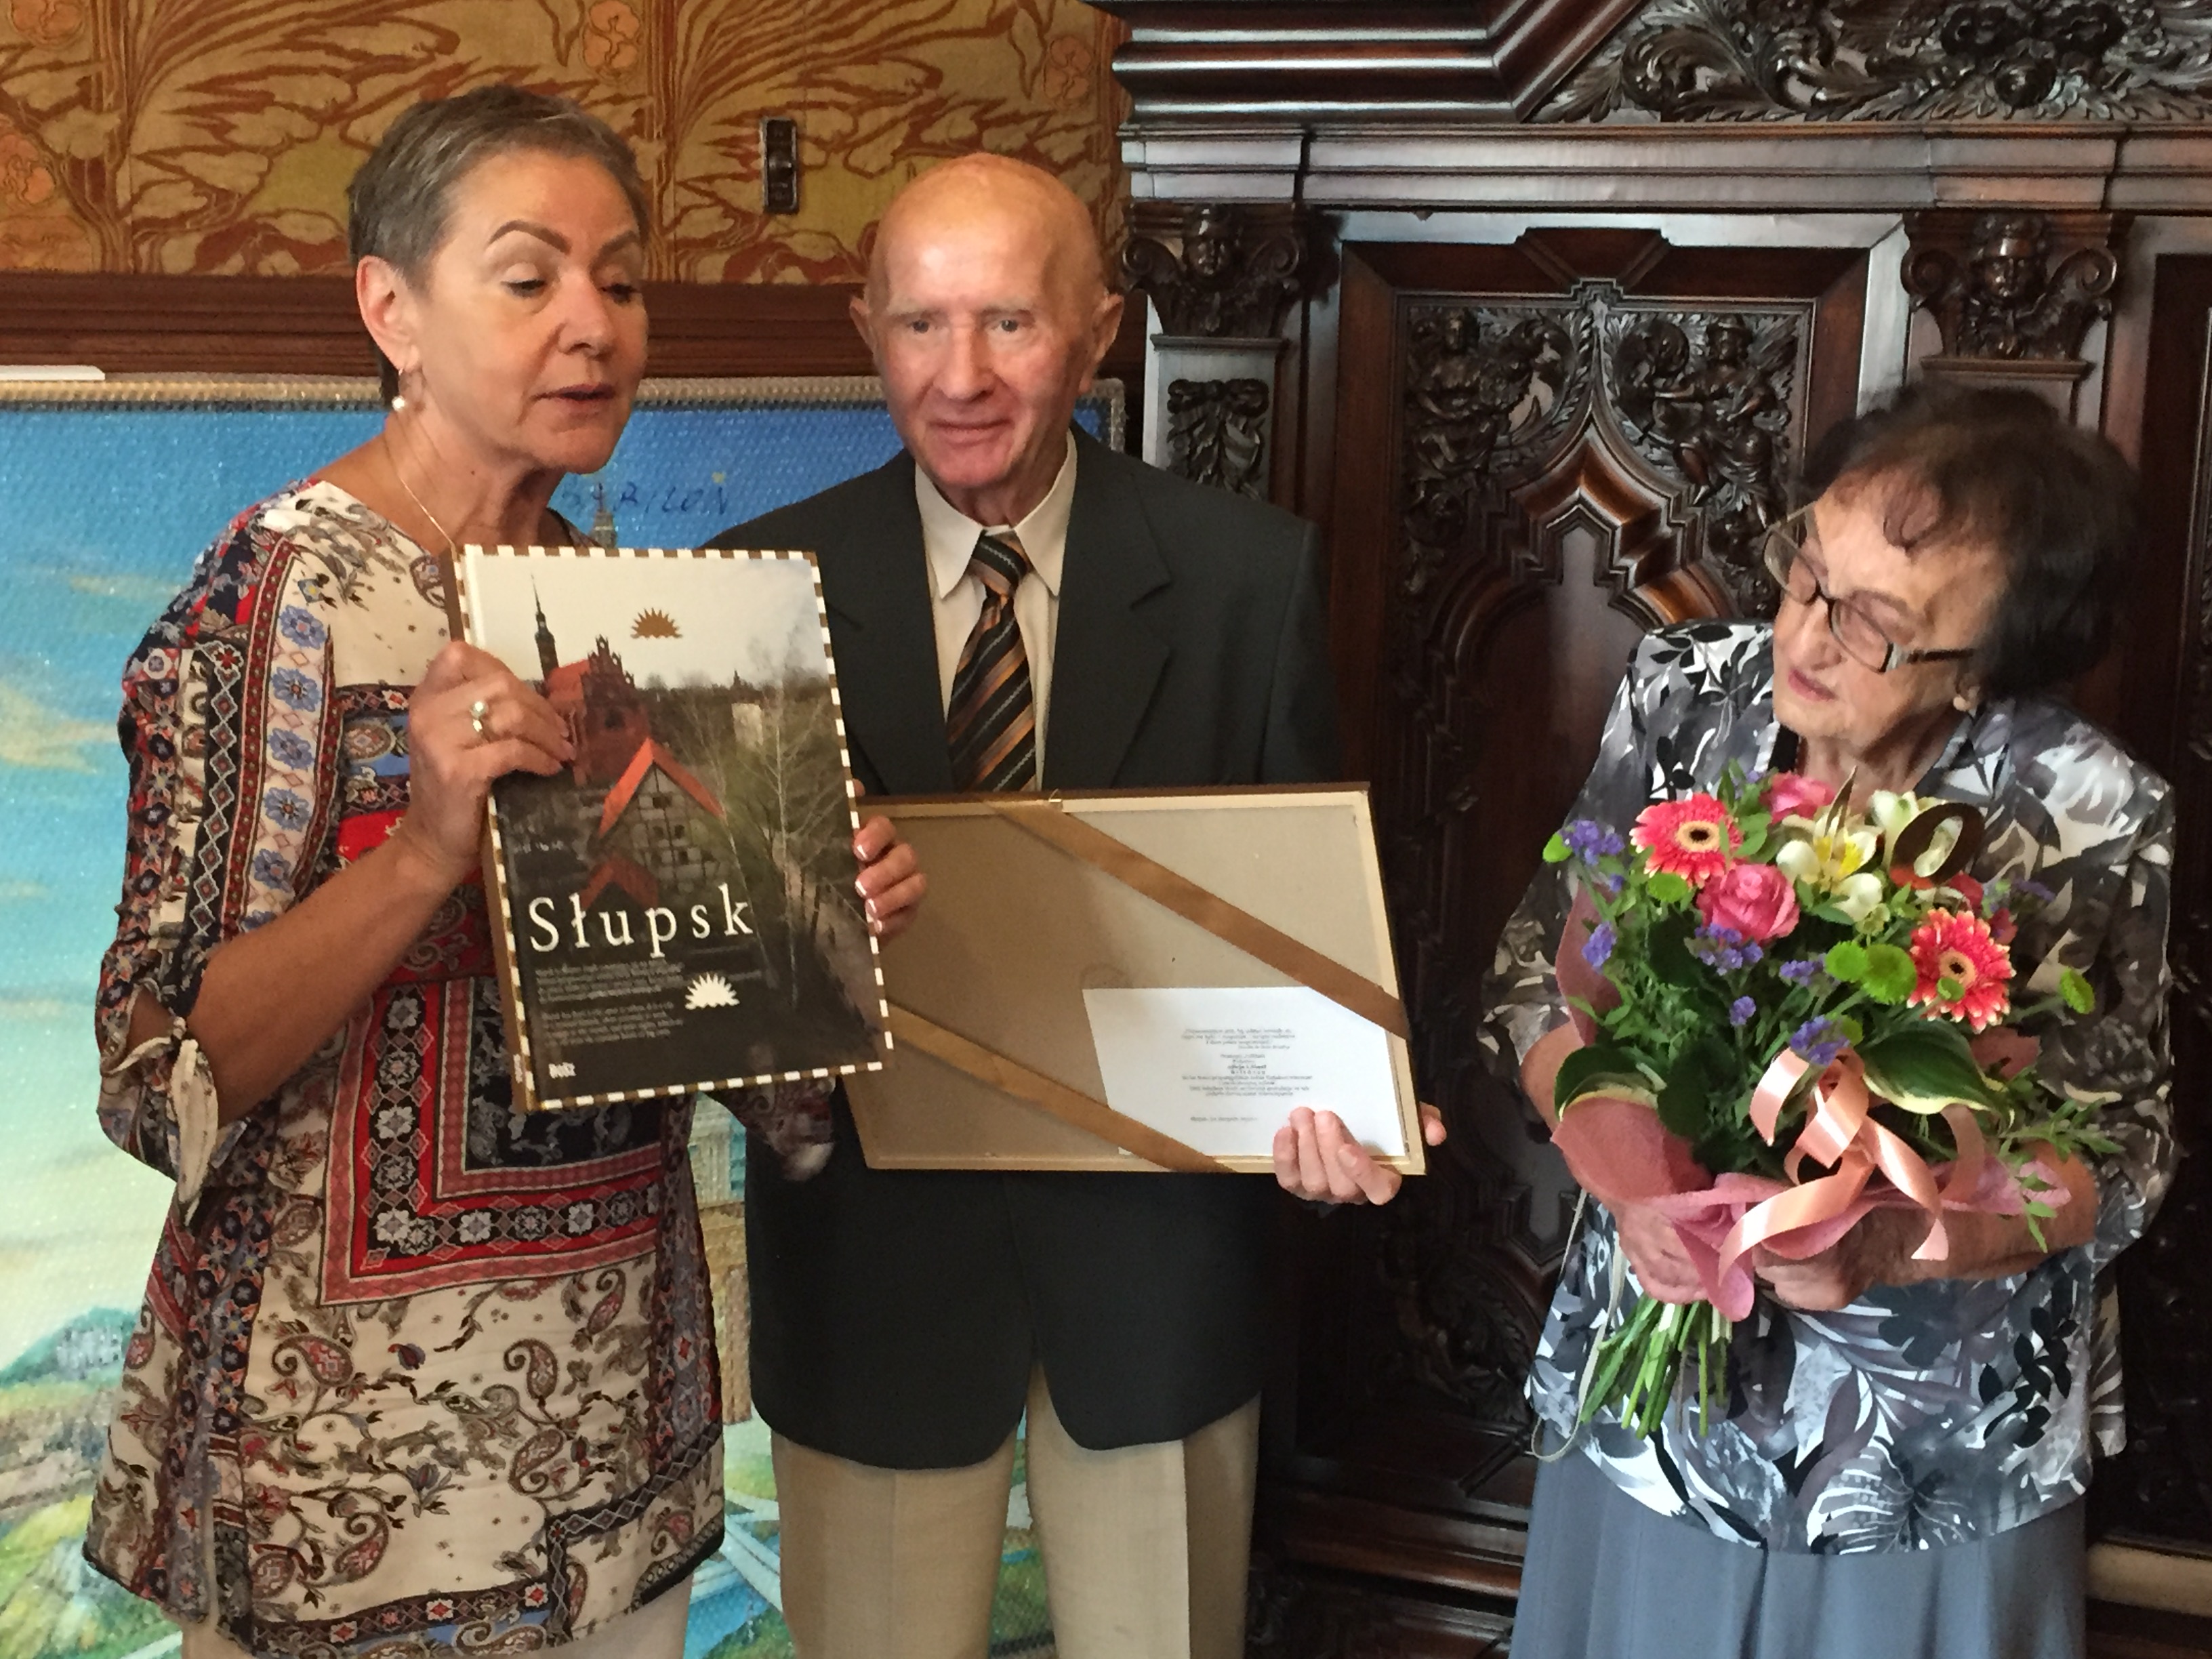 Pani Prezydent trzyma Album o Słupsku, który wręcza Jubilatom, Jubilat trzyma obraz a Jubilatka kwiaty